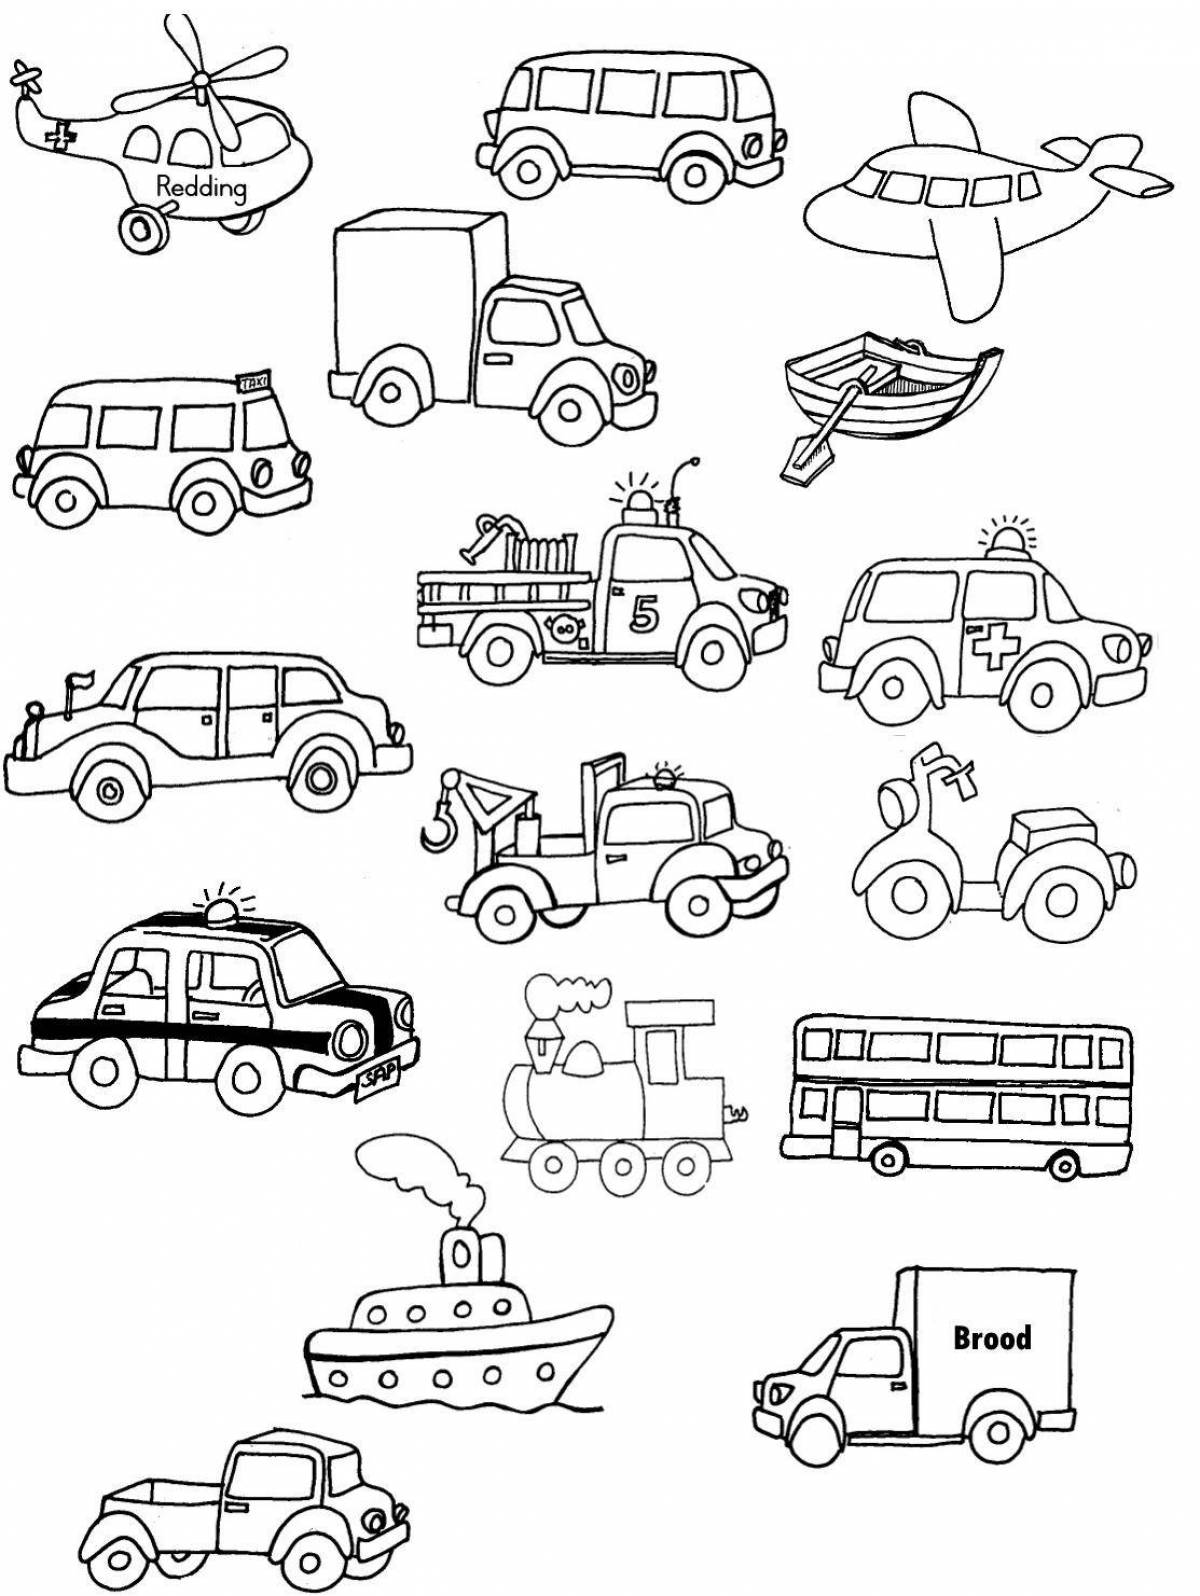 Развлекательная раскраска транспорта для детей 6-7 лет